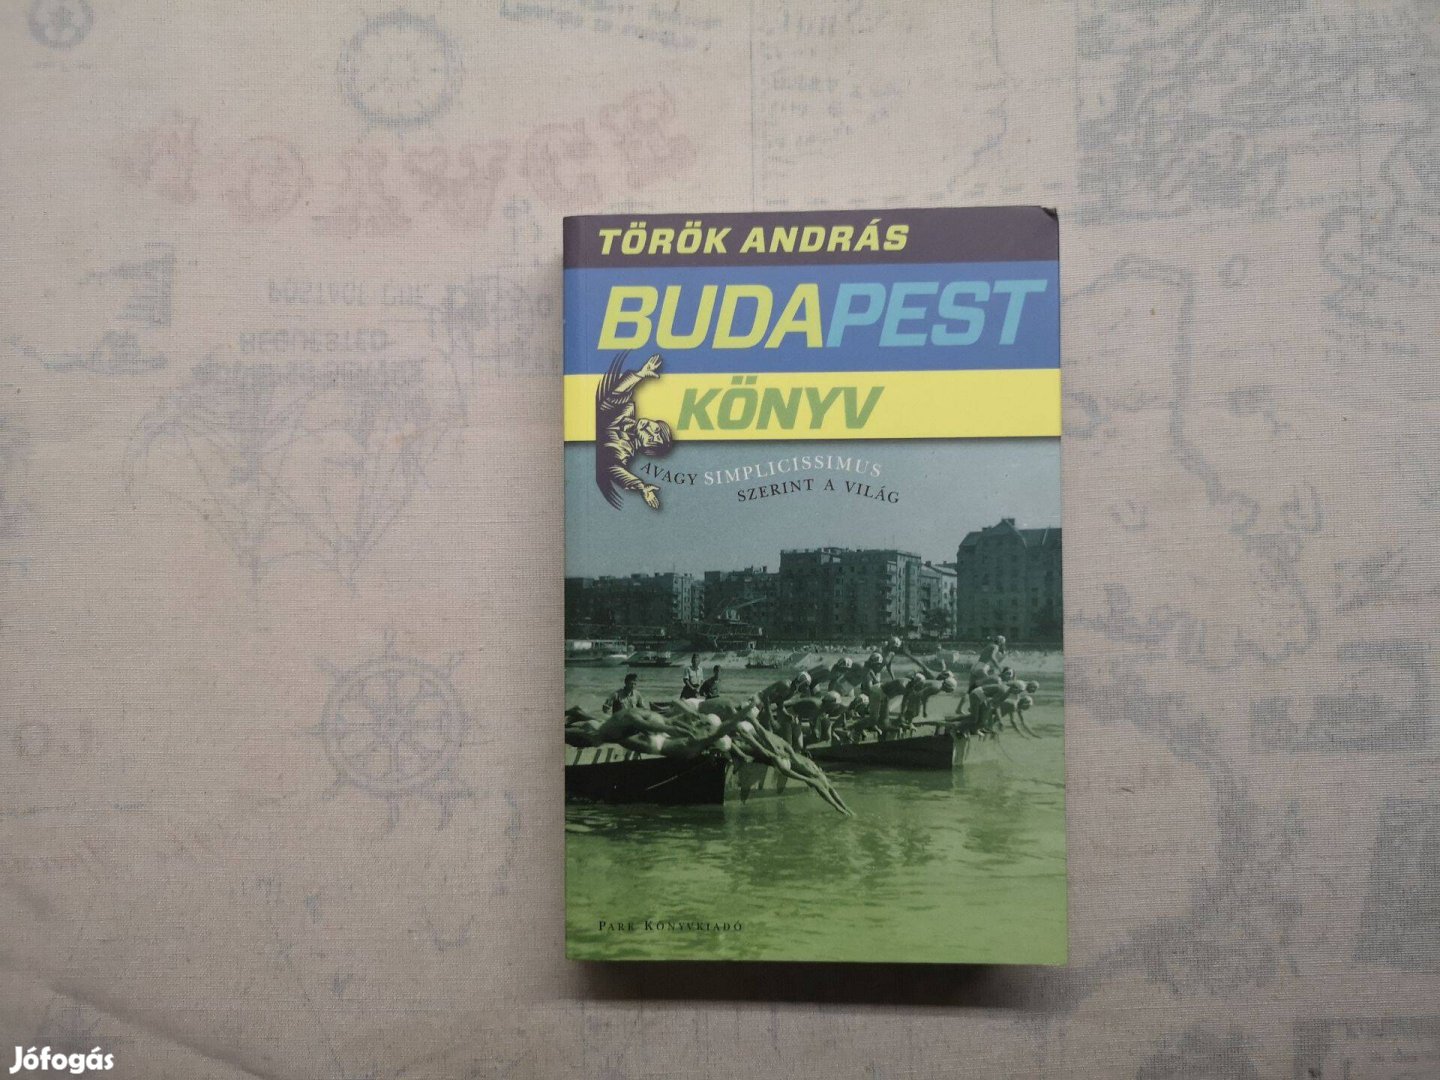 Török András - Budapest könyv